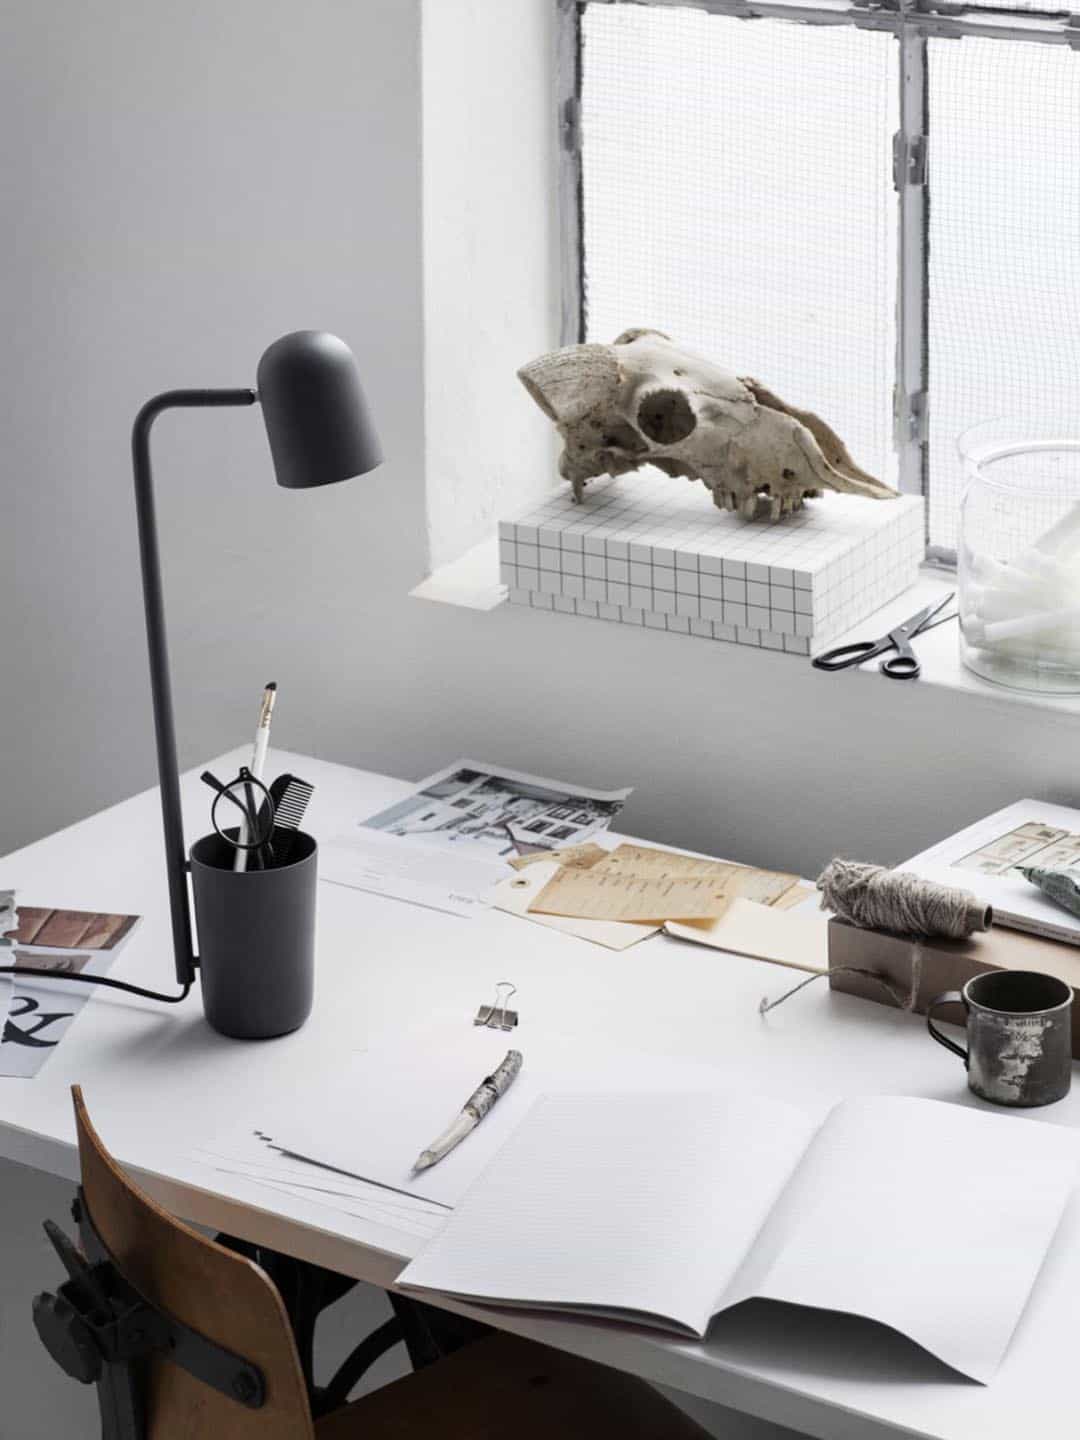 Настольная лампа Northern Buddy в скандинавском стиле на рабочем столе